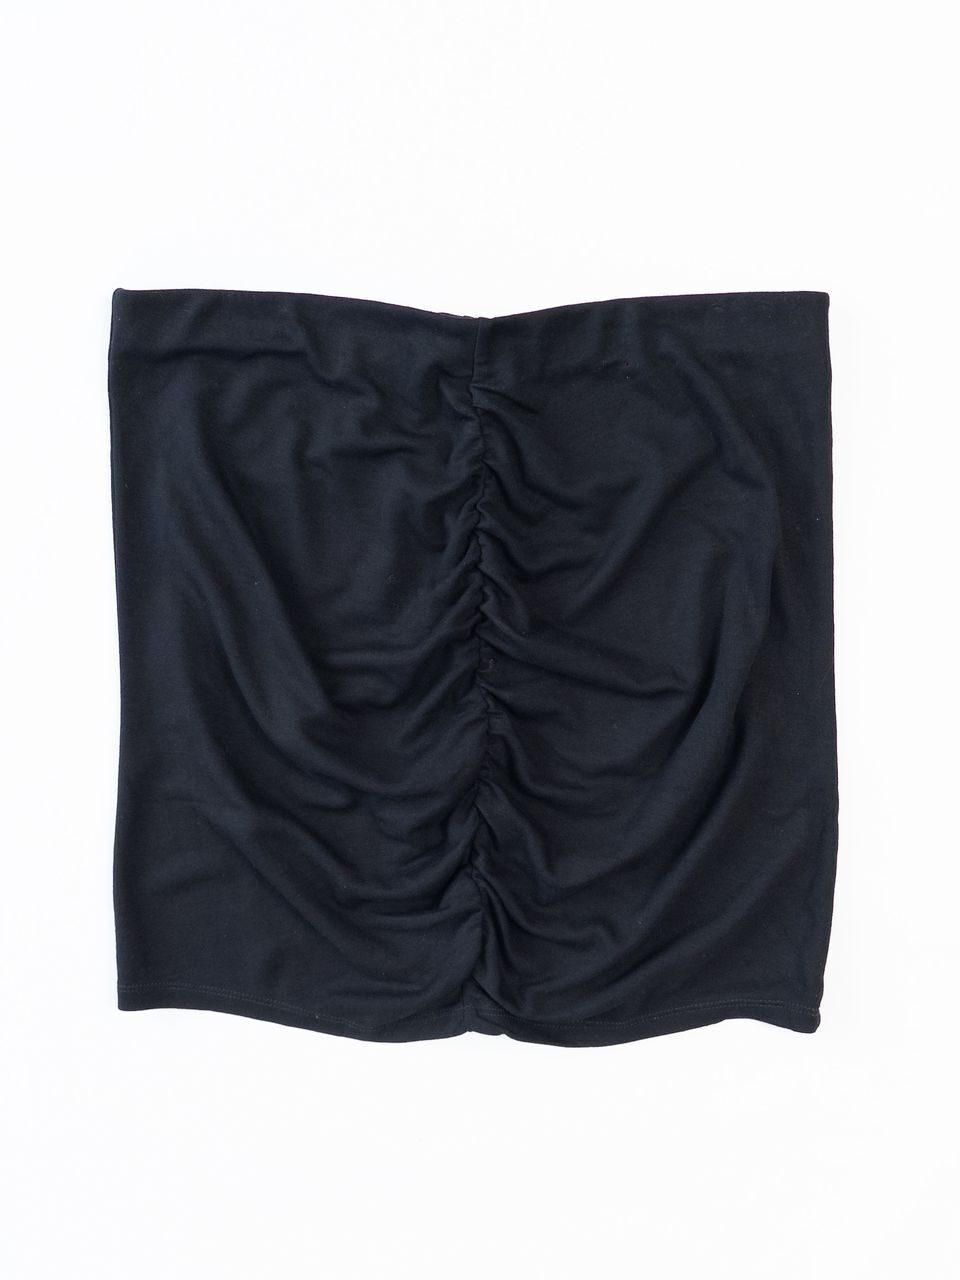 Юбка с драпировкой в поясе резинка цвет черный размер EUR L (rus 46-48) H&M